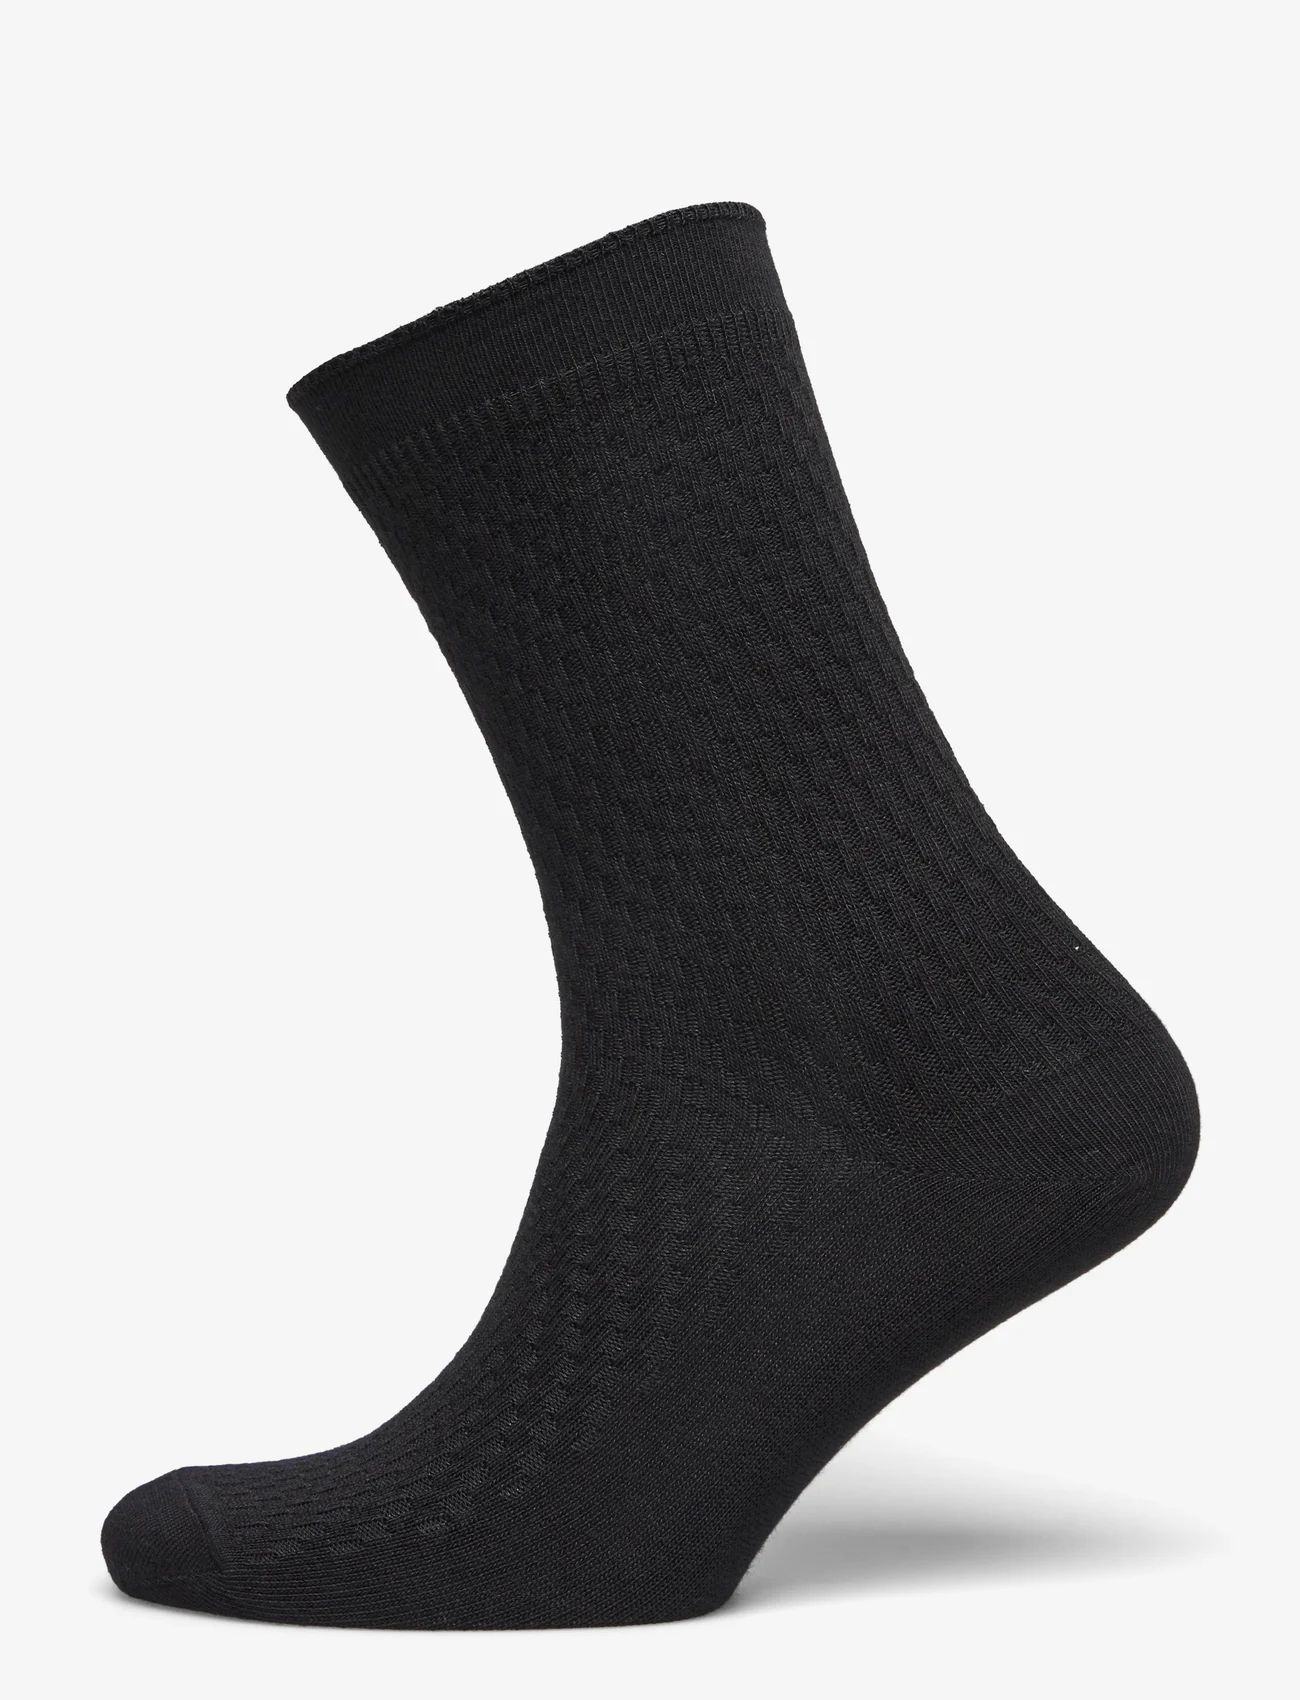 mp Denmark - Greta socks - laagste prijzen - black - 0